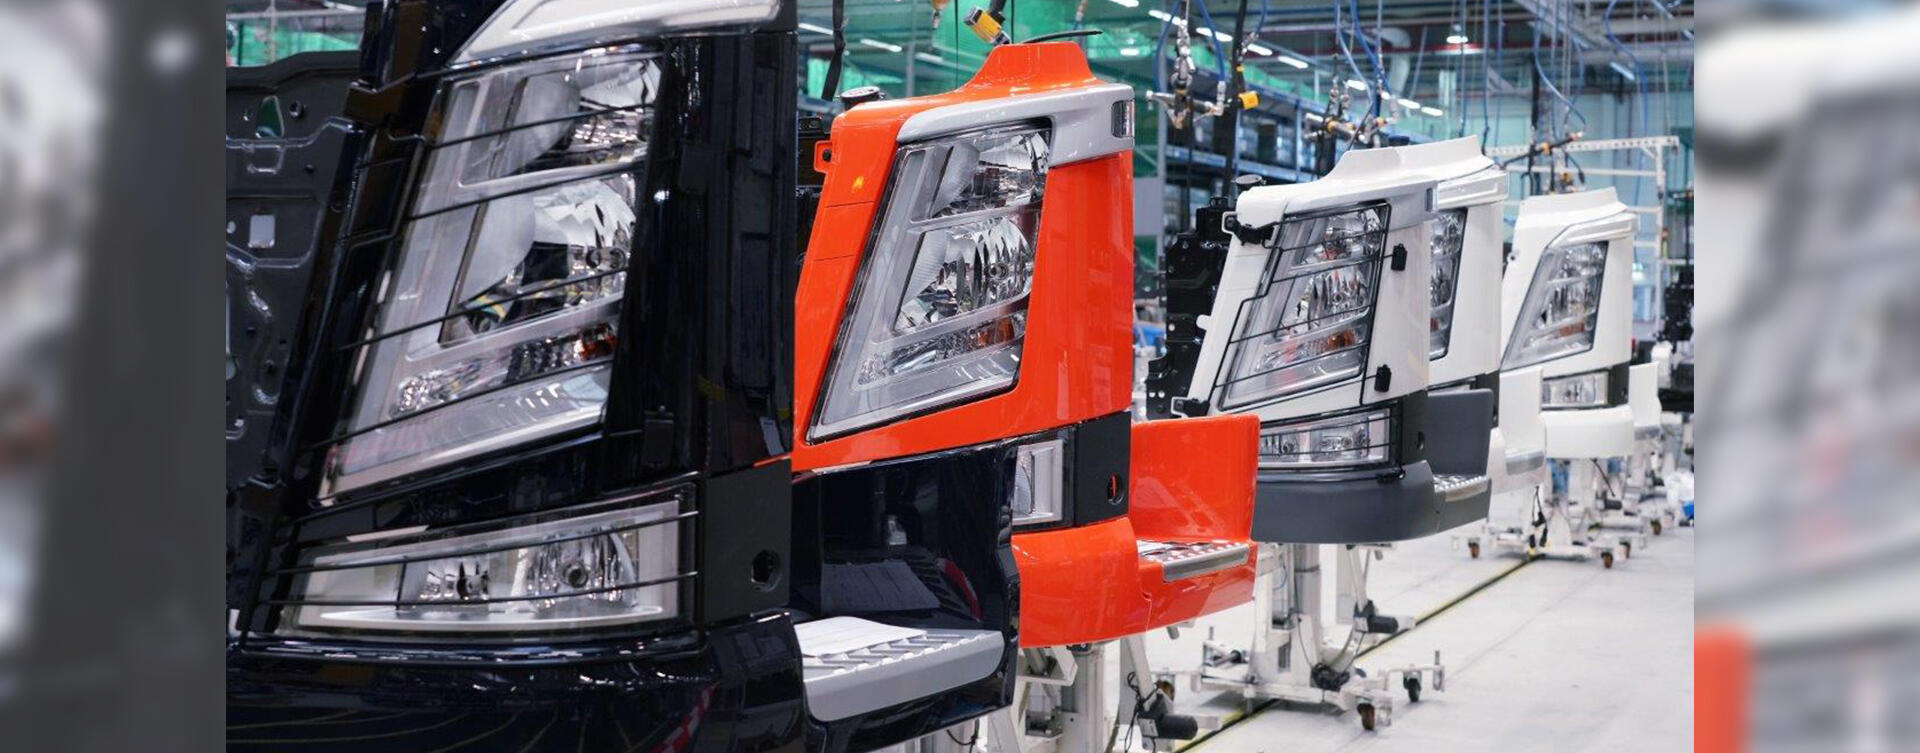 Productie van Volvo Trucks weer opgestart